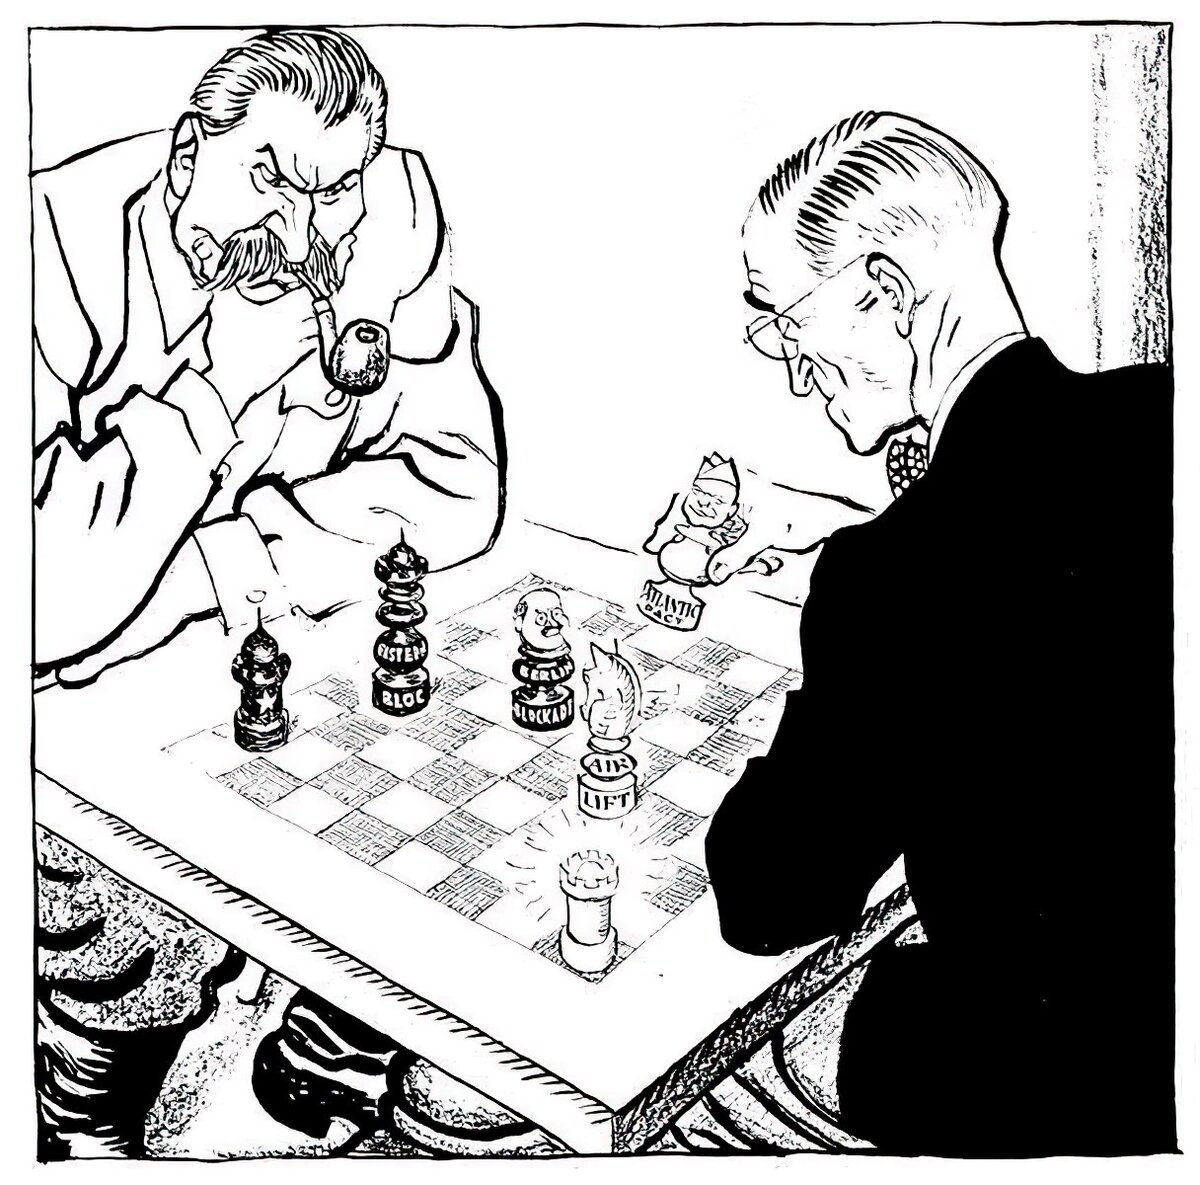 Ленин играет в шахматы. Лесли Гилберт Иллингворт Сталин. Сталин Трумен шахматы. Лесли Гилберта Иллингворта.